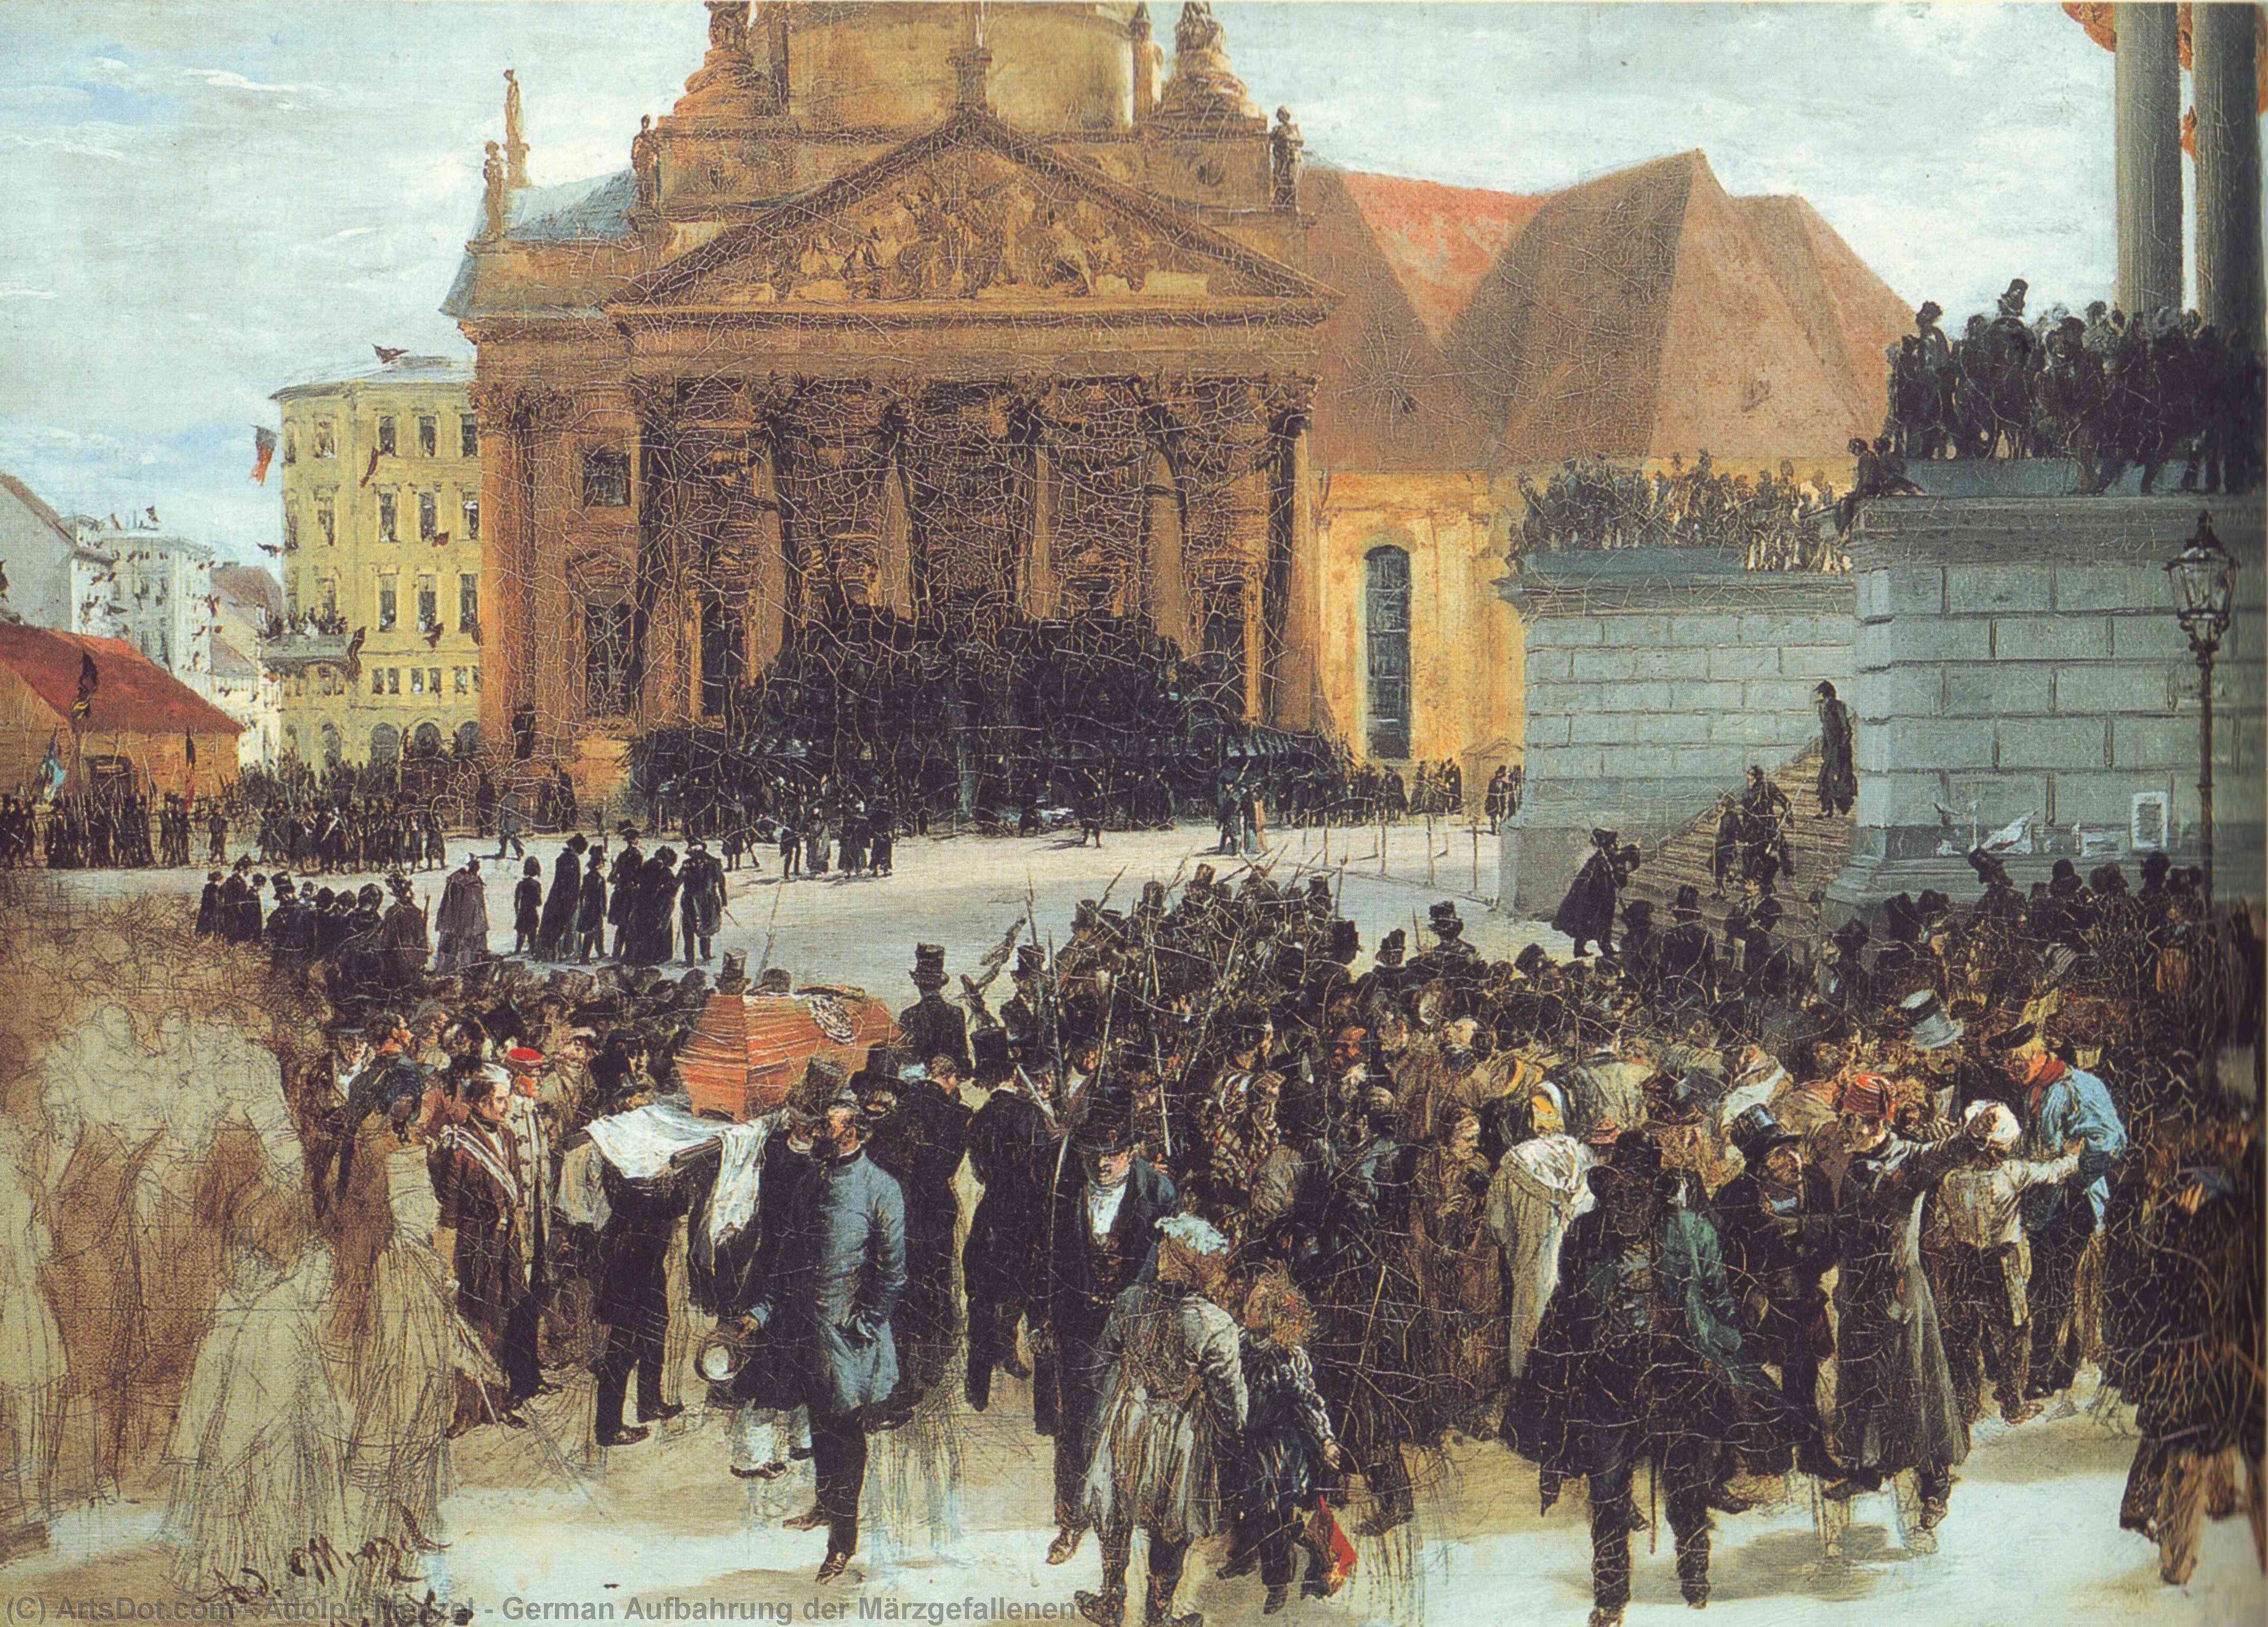 Compre Museu De Reproduções De Arte Alemão Aufbahrung der Märzgefallen, 1848 por Adolph Menzel | ArtsDot.com